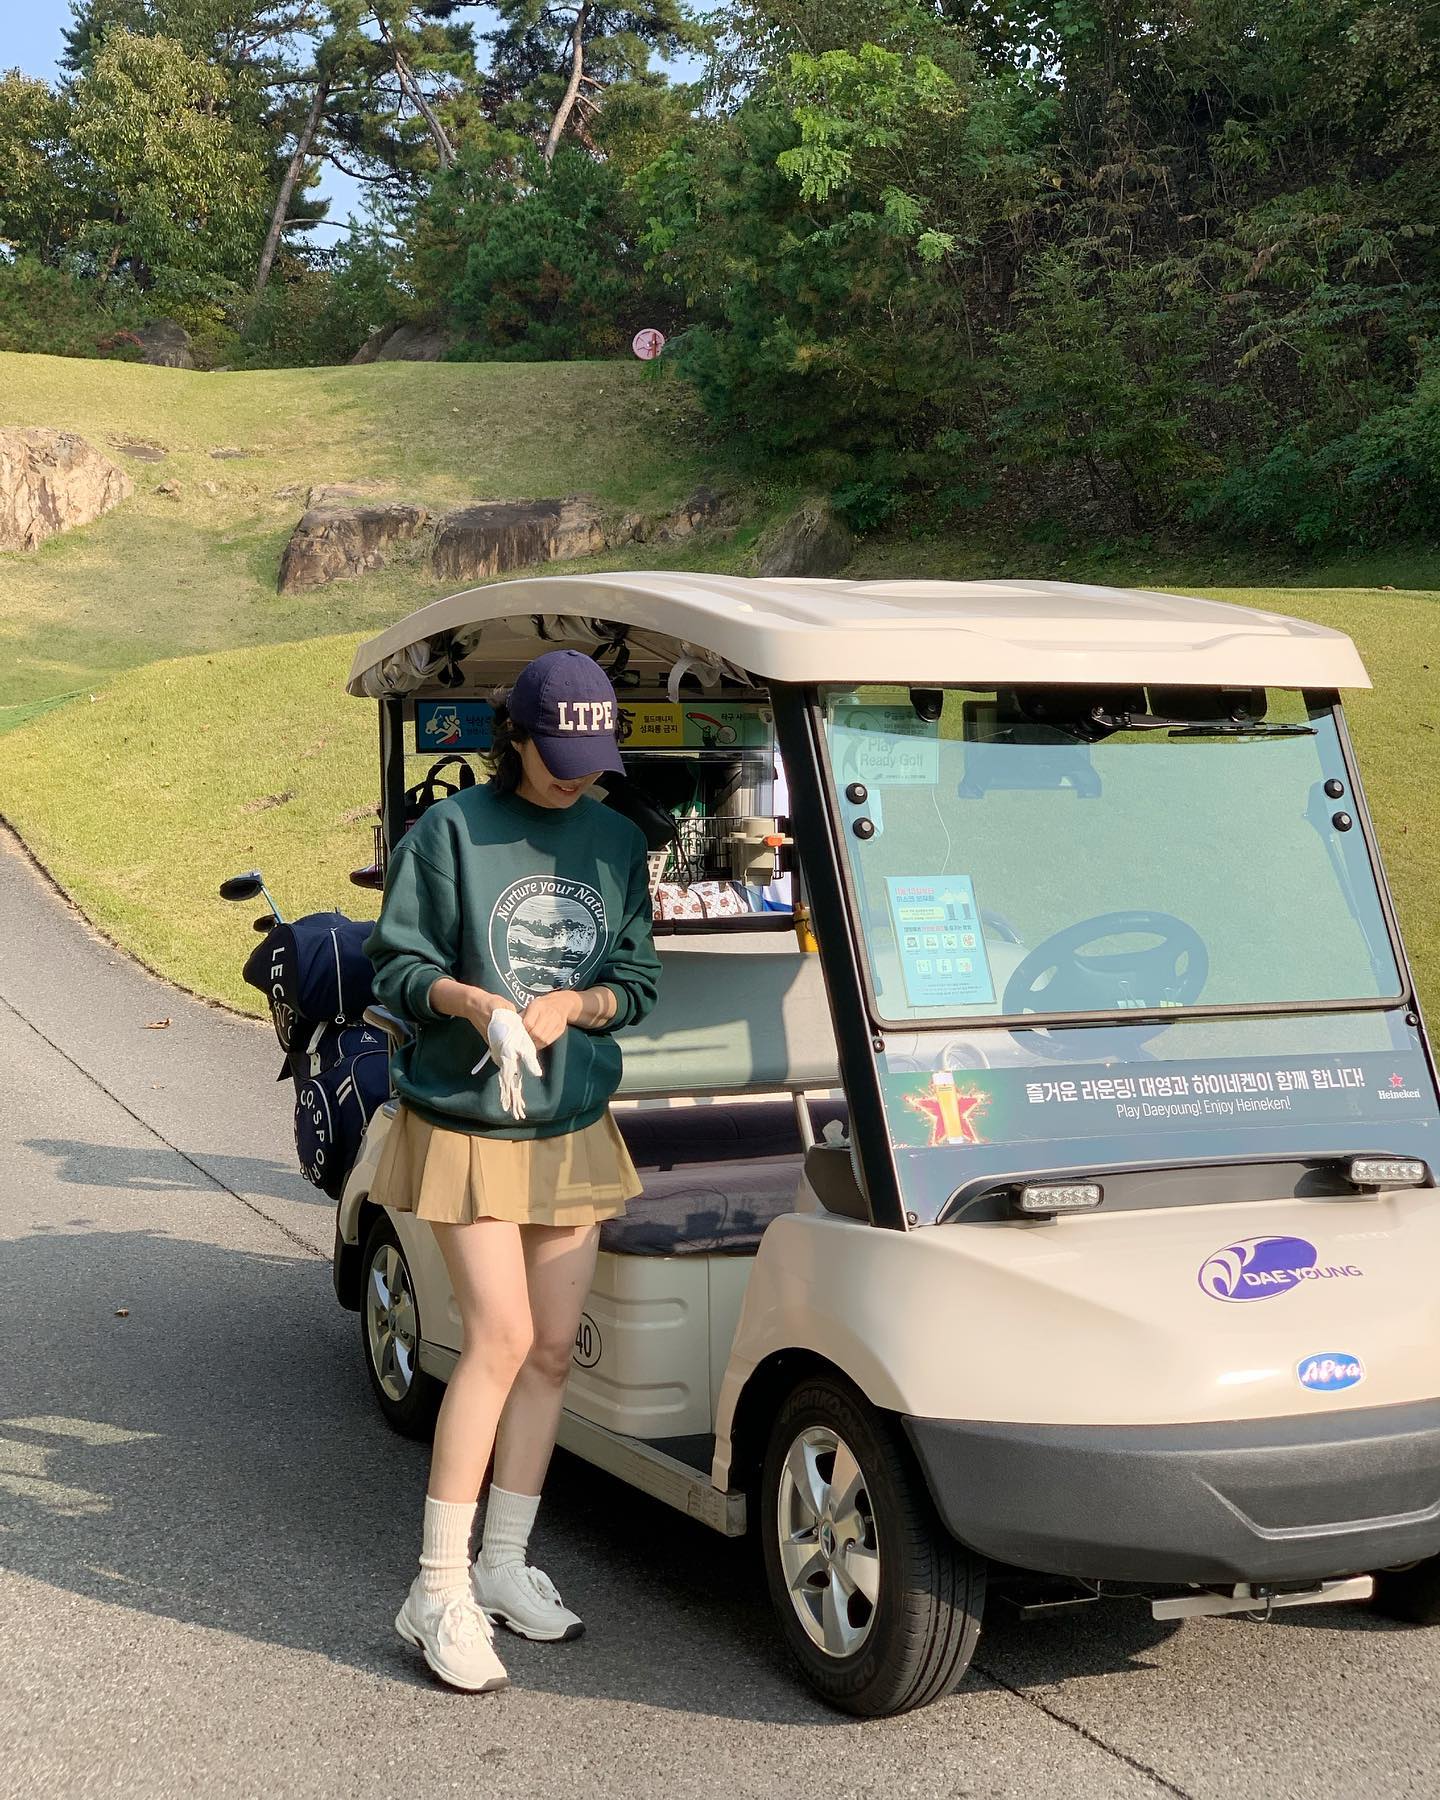 단독으로 진행했던 골프웨어 브랜드 레탑의 맨투맨을 입고 골프장에서. 다시 시작한 골프에서 활기를 얻고 있다고.